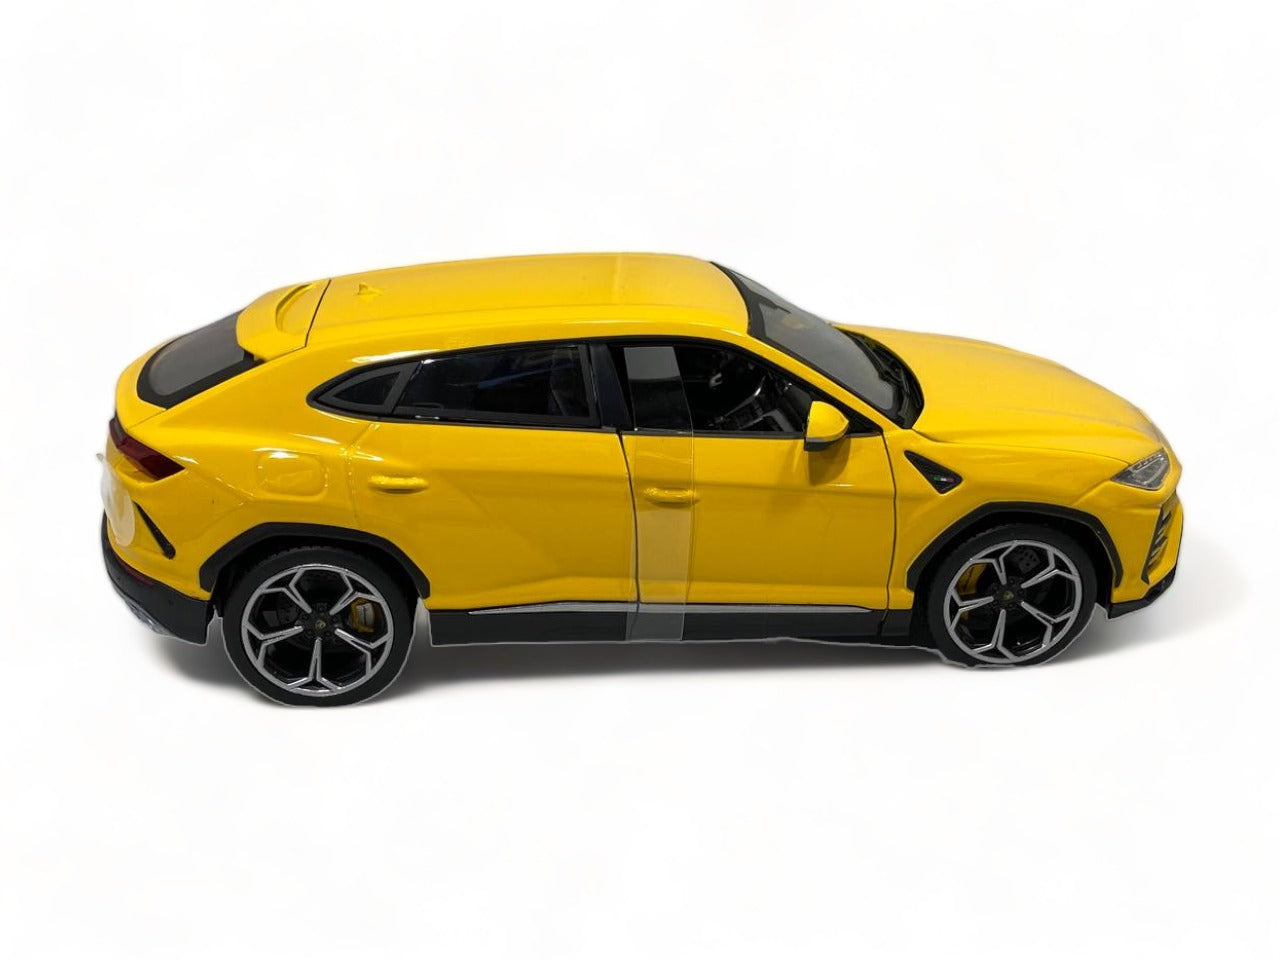 1/18 Diecast Lamborghini Urus Orange Bburago Scale Model Car